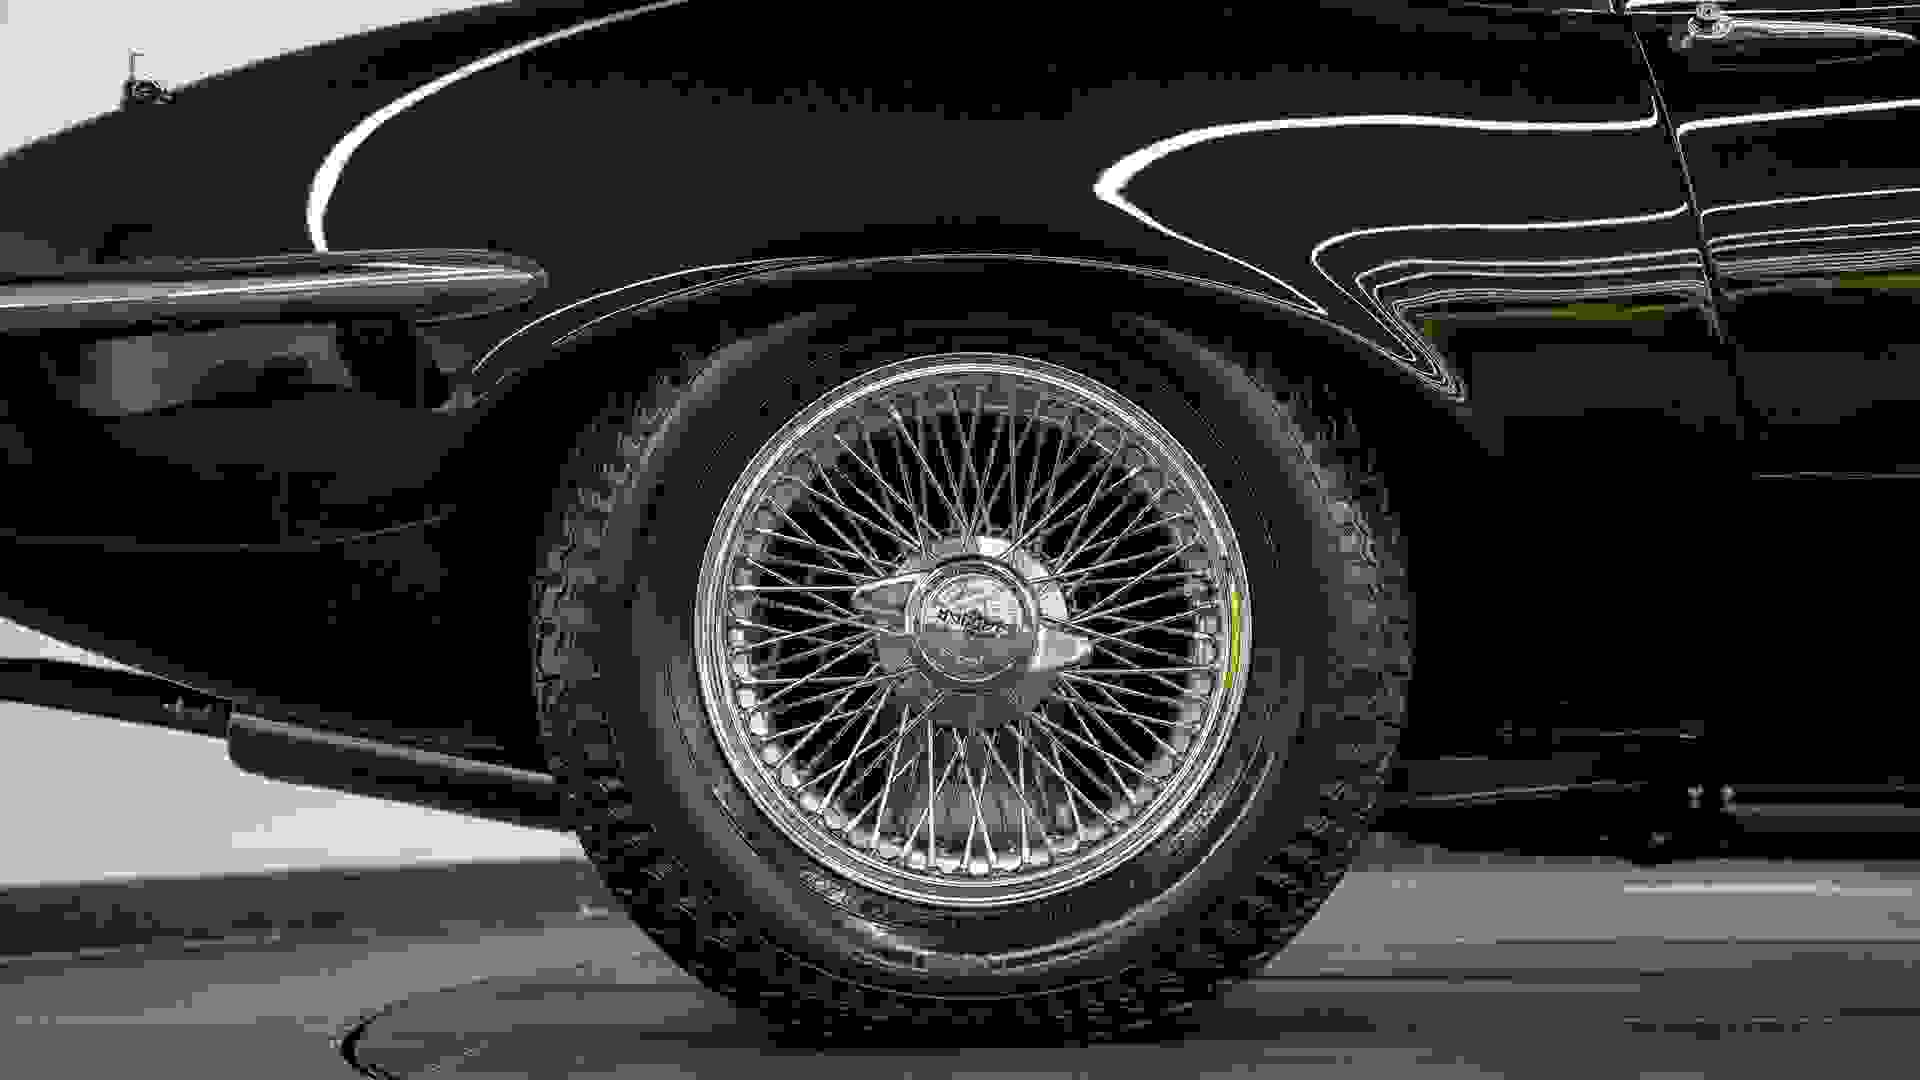 Jaguar E-TYPE Series 3 Photo 671bce64-451e-4b0e-a84c-5b940c7454ab.jpg